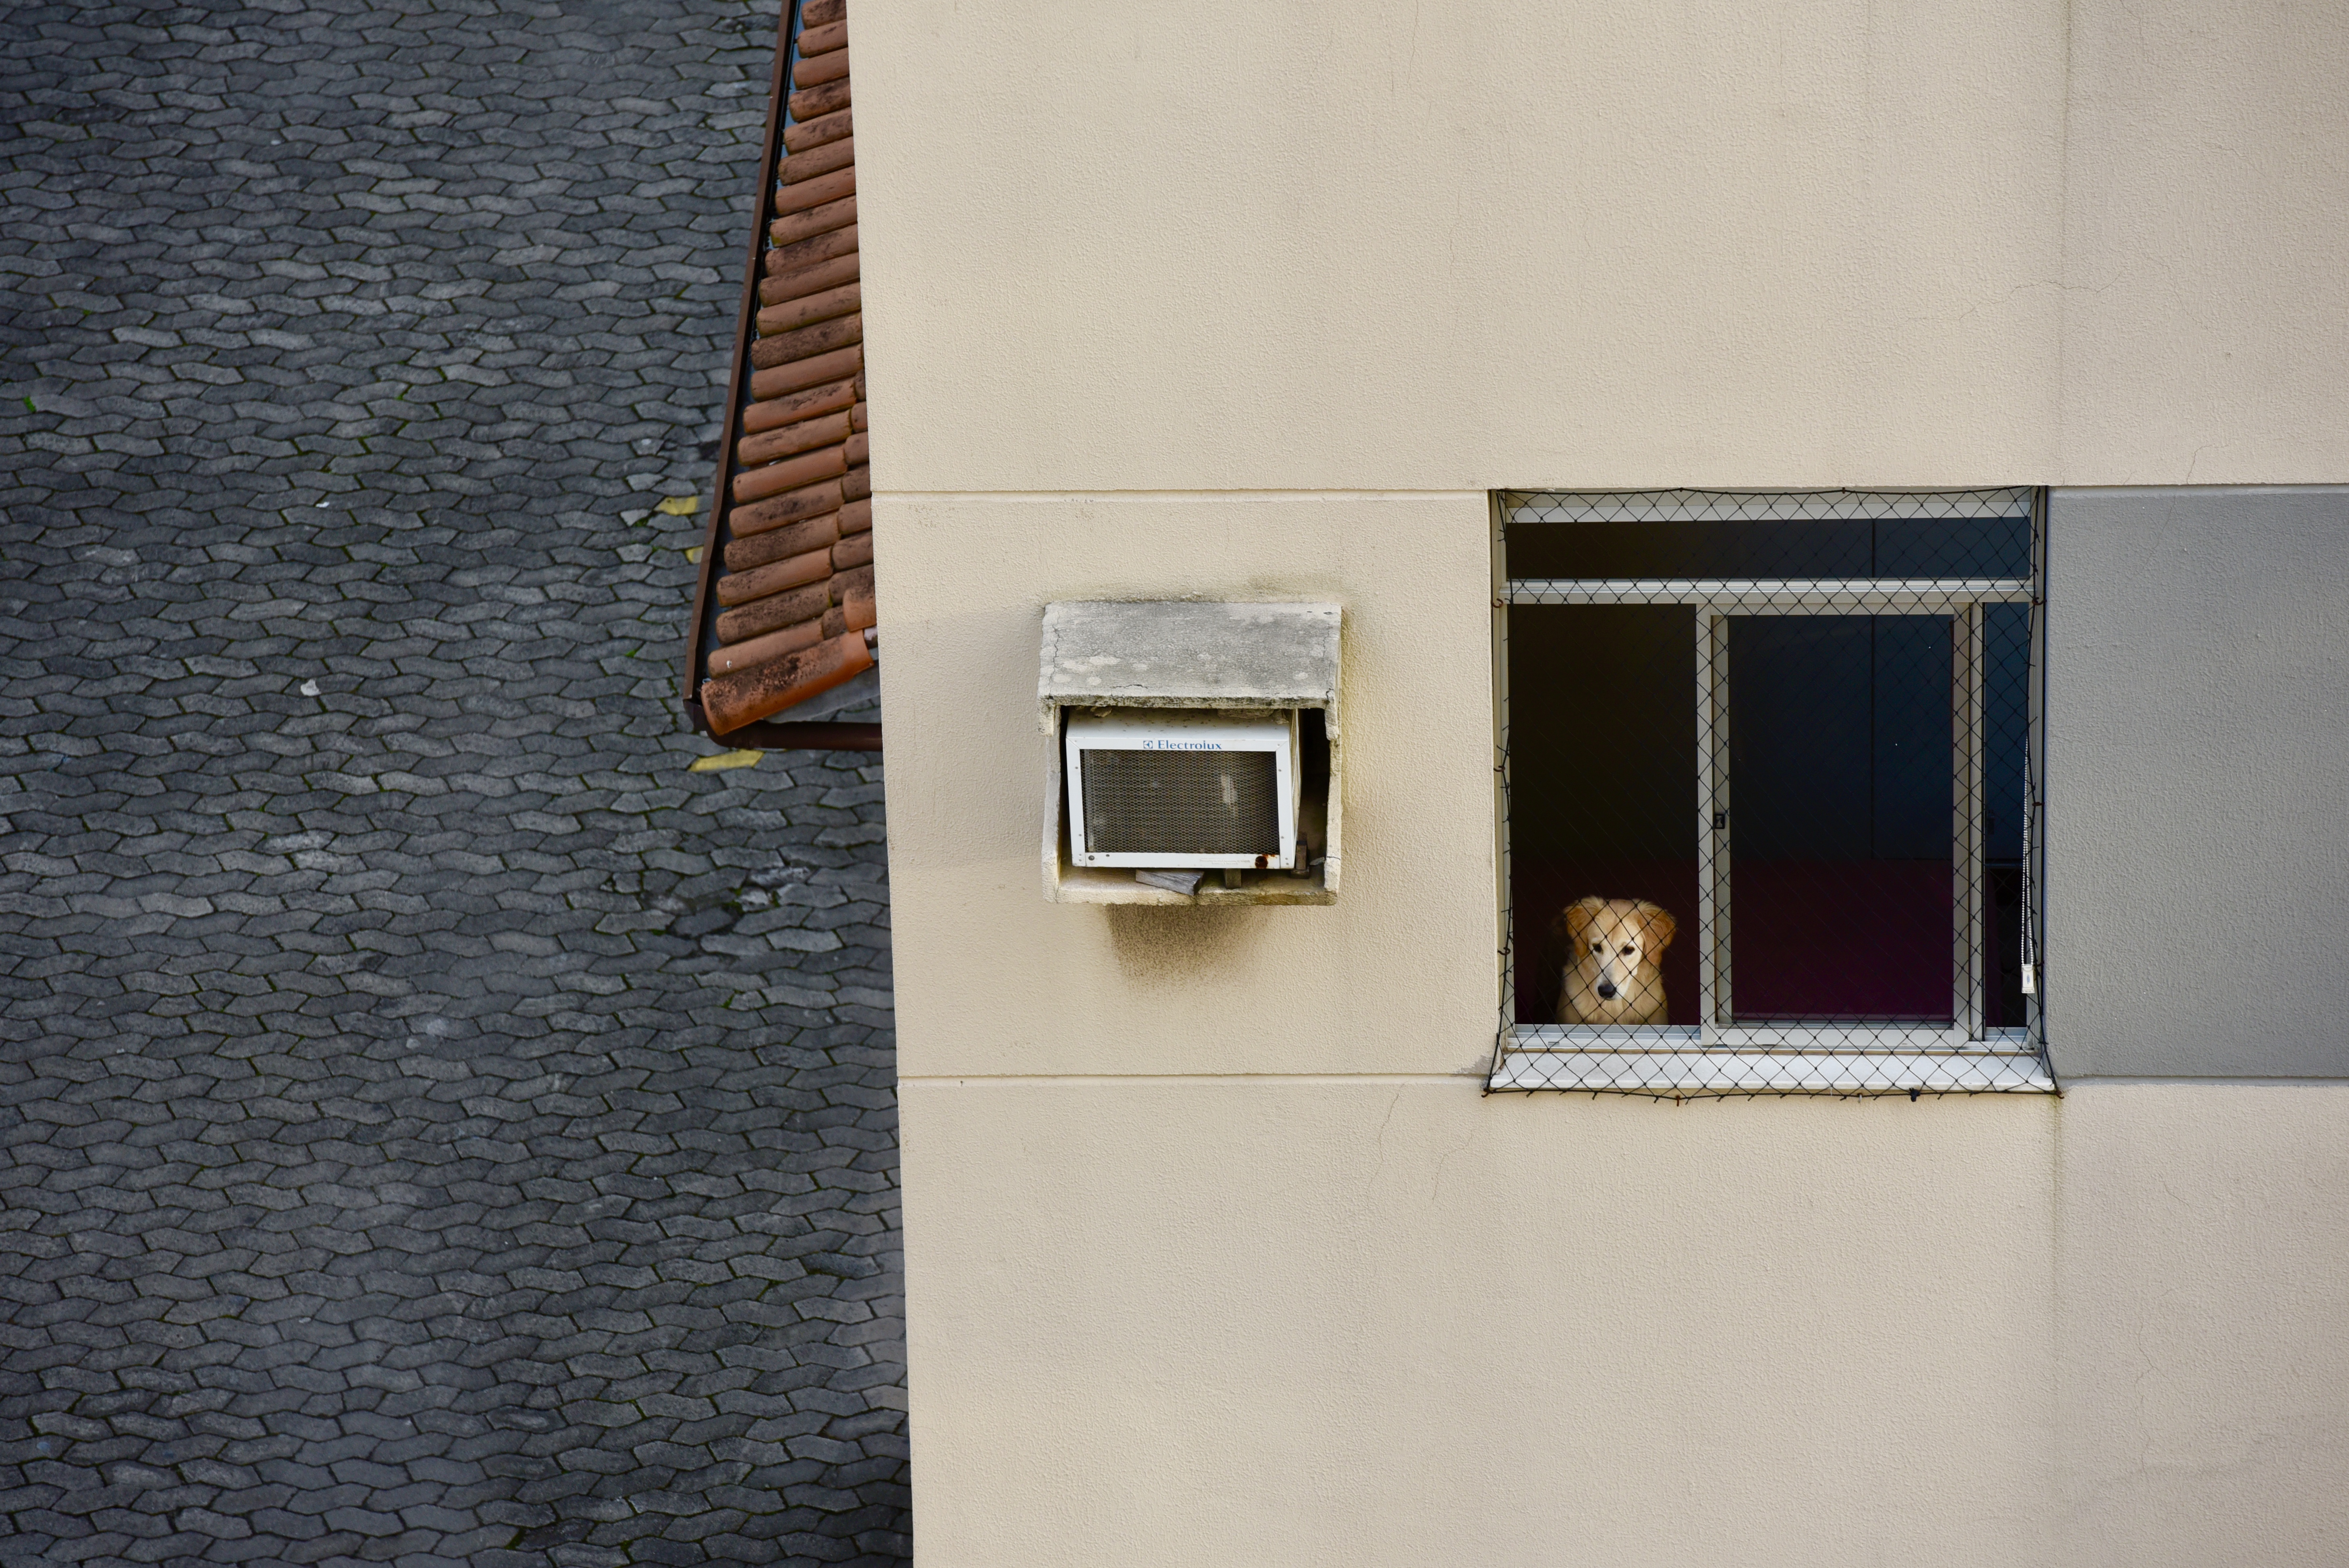 Meu vizinho cão parece olhar pra onde eu gostaria de estar: a rua.